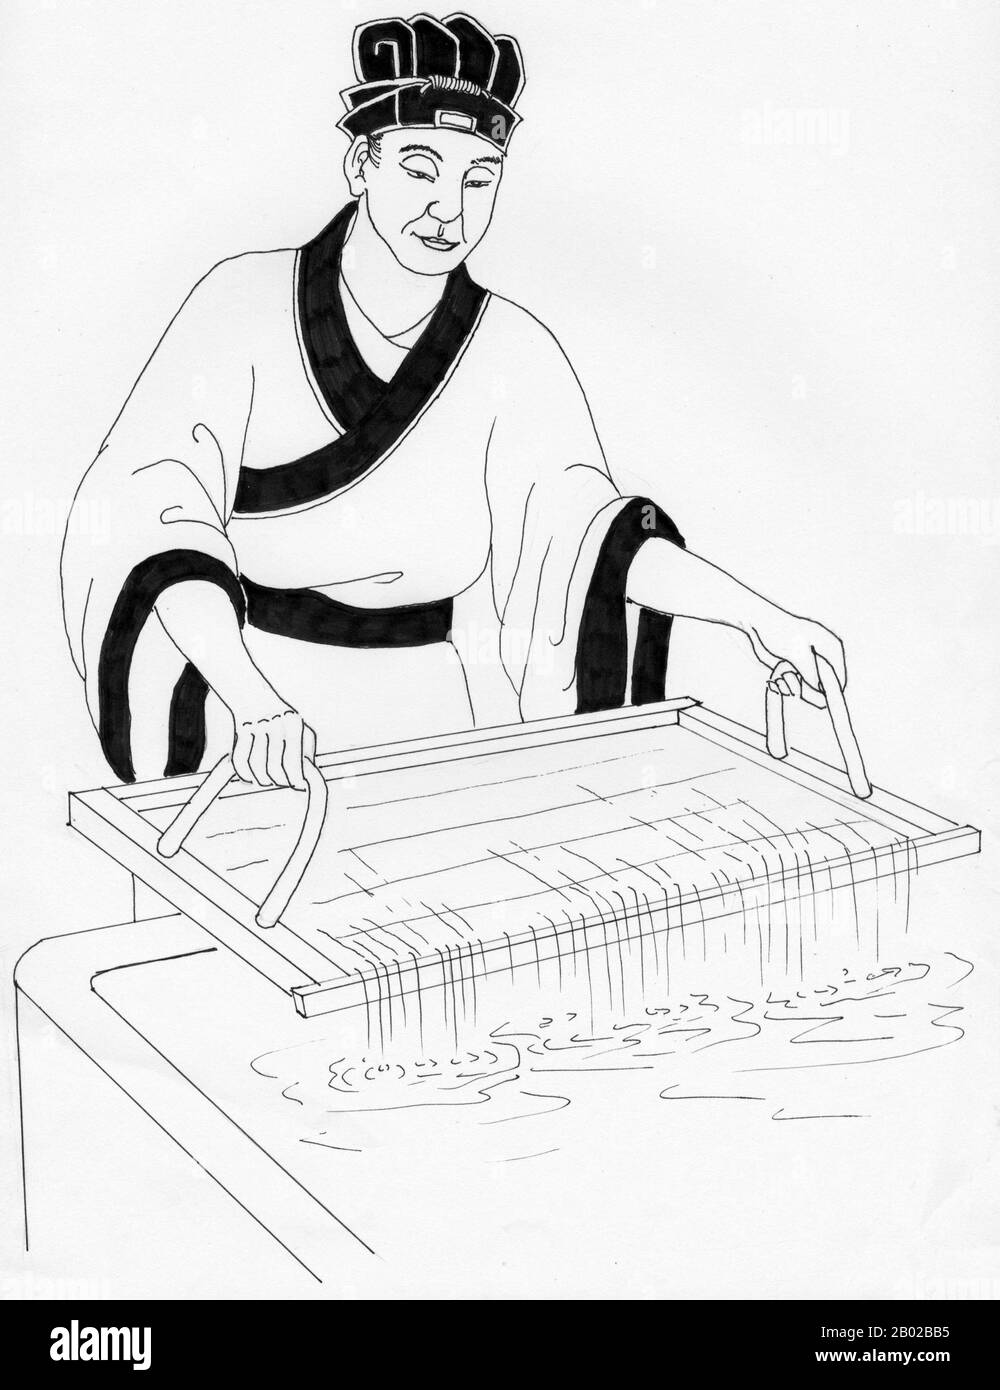 Cai Lun (vereinfachtes Chinesisch: 蔡伦; traditionelles Chinesisch: 蔡倫; Pinyin: Cài Lún; Wade-Giles: TS'ai Lun) (ca. 50 CE - 121), Höflichkeitsname Jingzhong (敬仲), war ein chinesischer Eunuch und politischer Beamter. Er gilt traditionell als Erfinder des Papiers und der Papierherstellung, in Formen, die in der Moderne als Papier (im Gegensatz zu Papyrus) erkennbar sind. Obwohl es in China schon seit dem 2. Jahrhundert v. Chr. frühe Papierformen gab, war er für die erste bedeutende Verbesserung und Standardisierung der Papierherstellung verantwortlich, indem er wesentliche neue Materialien in seine Zusammensetzung einfügte. Stockfoto